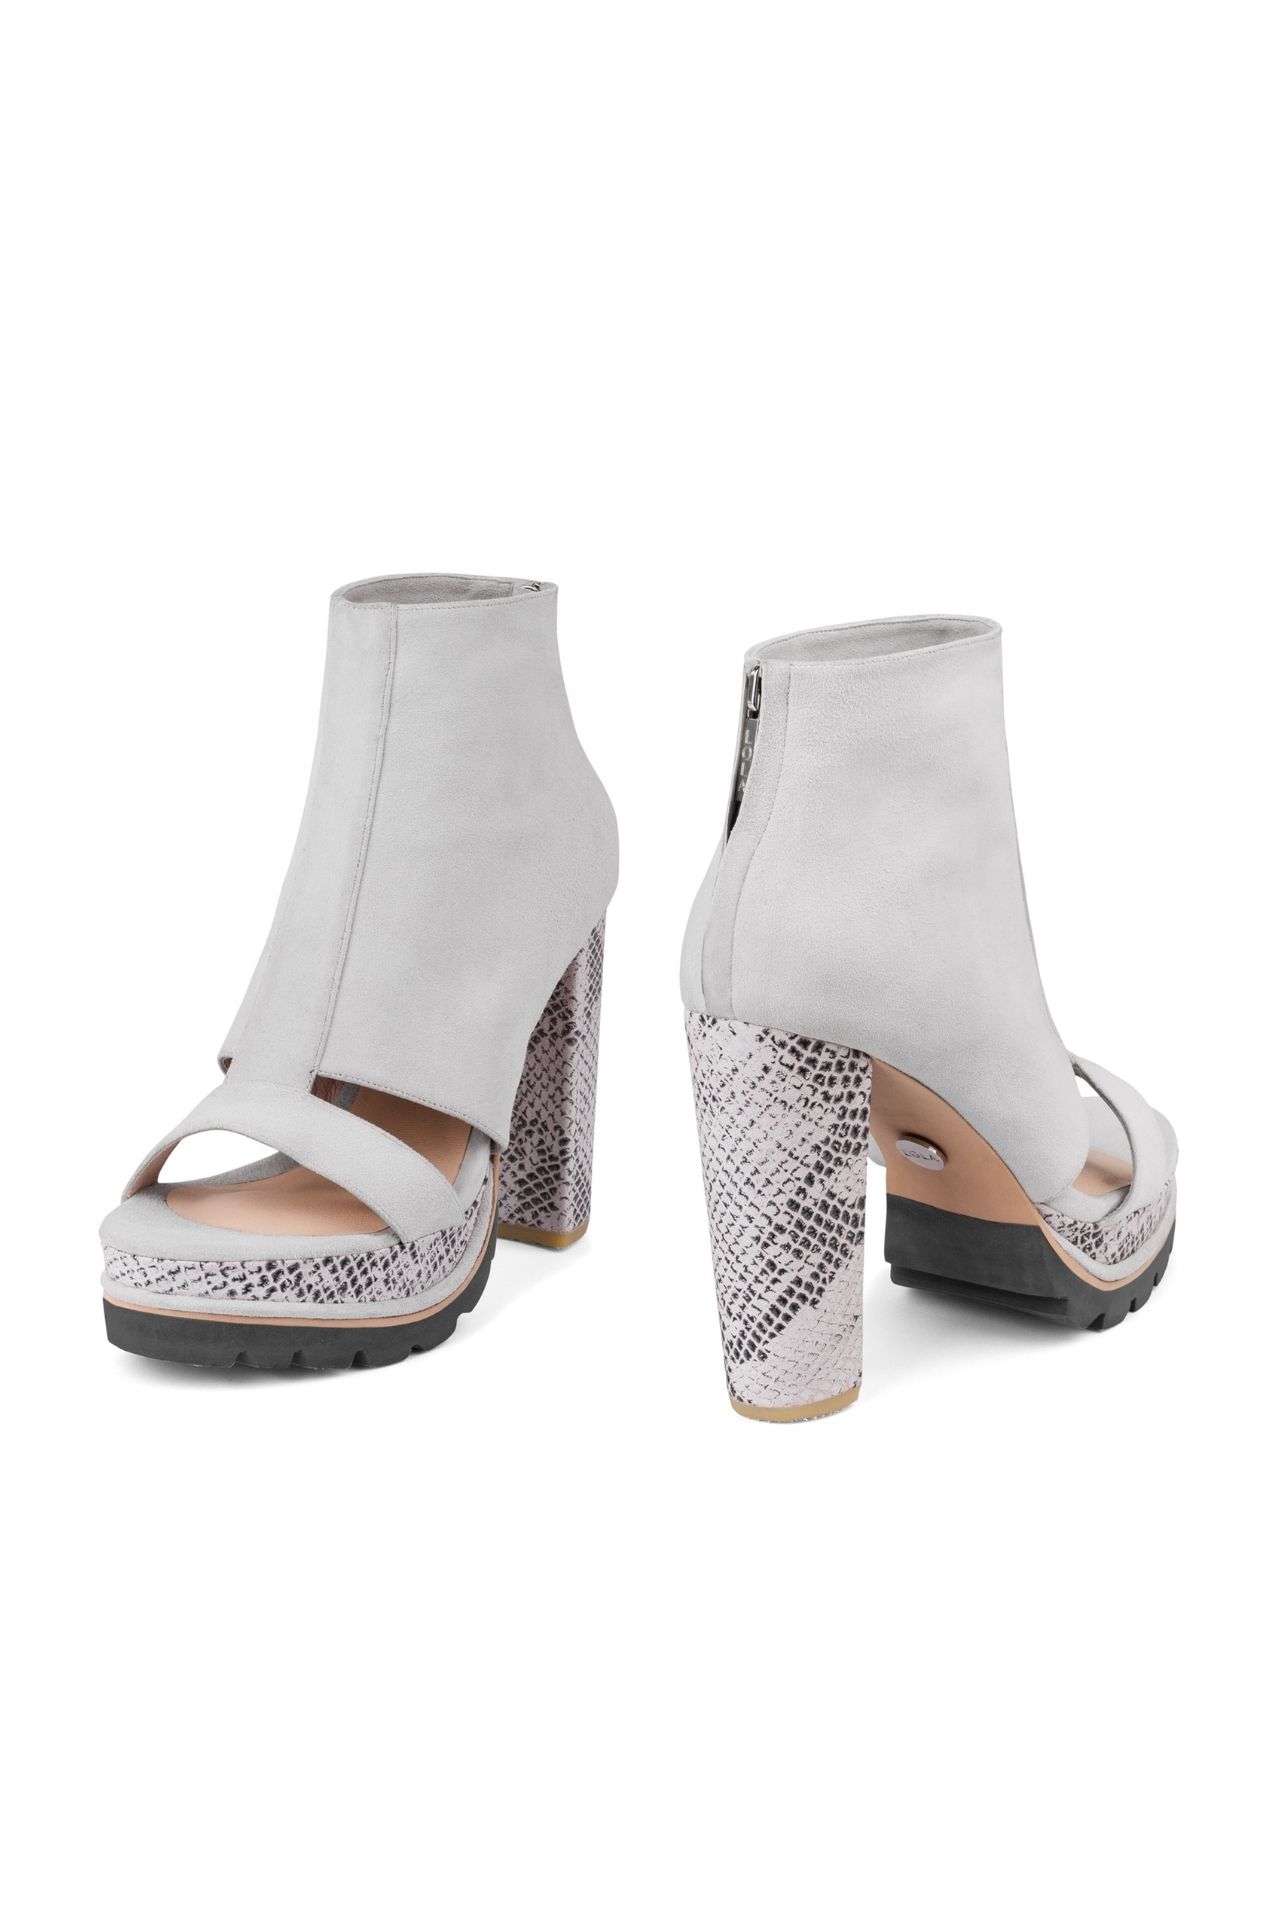 Llega una nueva versión de nuestras Jules, las icónicas bootie sandals de LOLA que le dan la bienvenida a la primavera.

Taco: 12 cm
